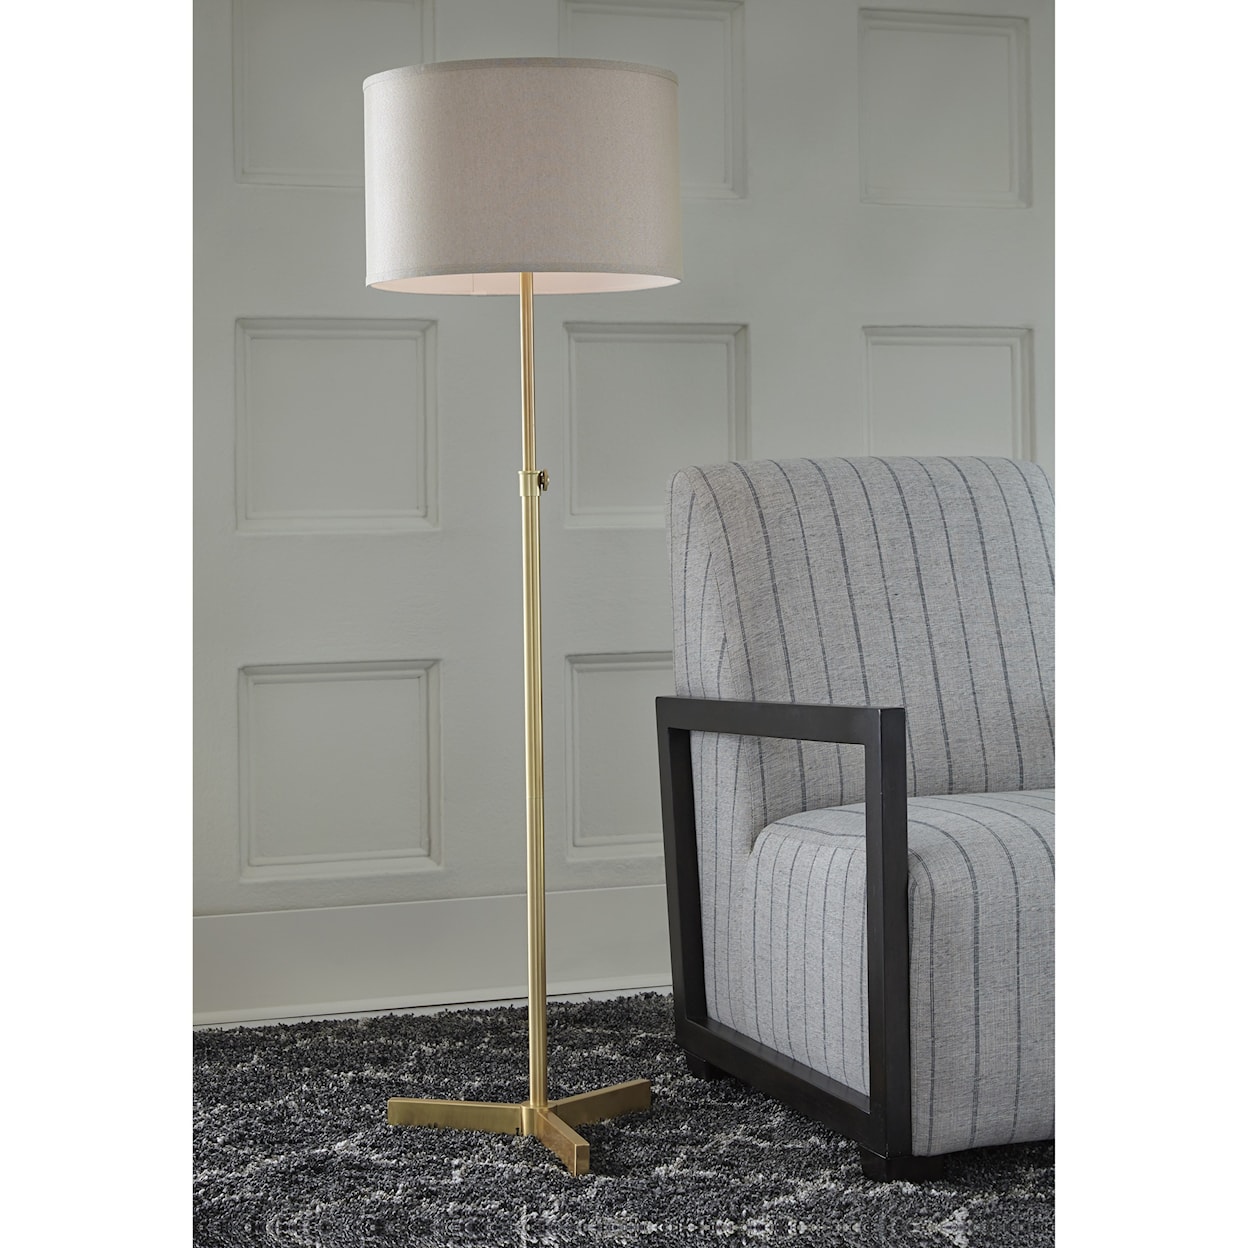 Ashley Furniture Signature Design Lamps - Contemporary Laurinda Floor Lamp